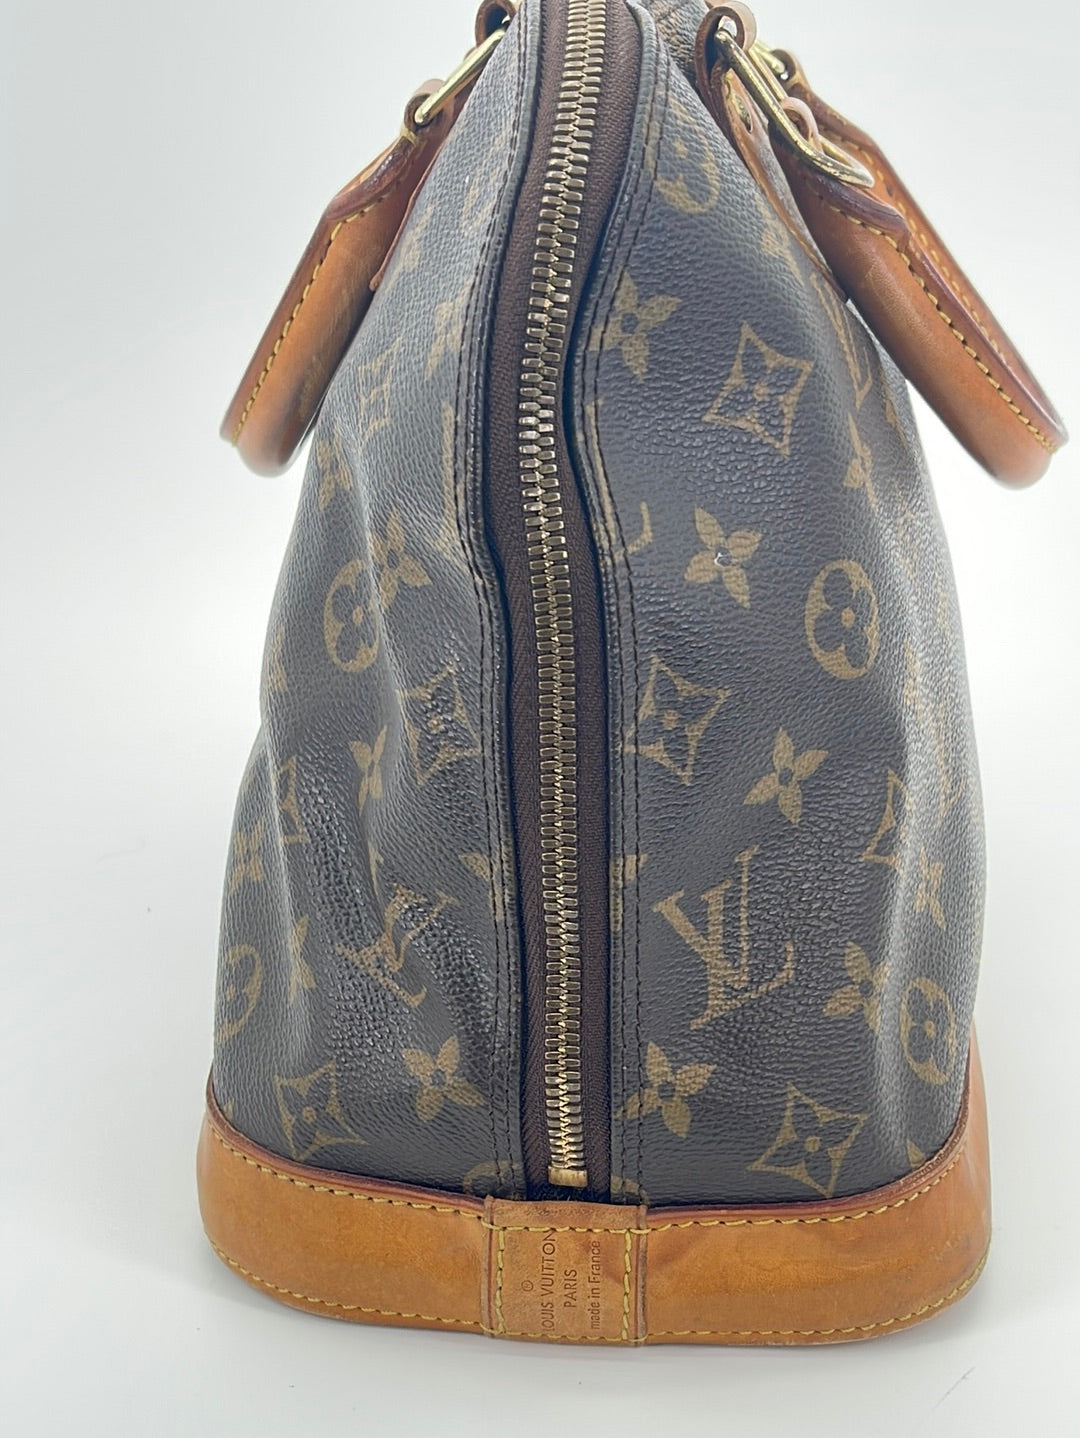 PRELOVED Louis Vuitton Alma PM Monogram Handbag E2300730 030823